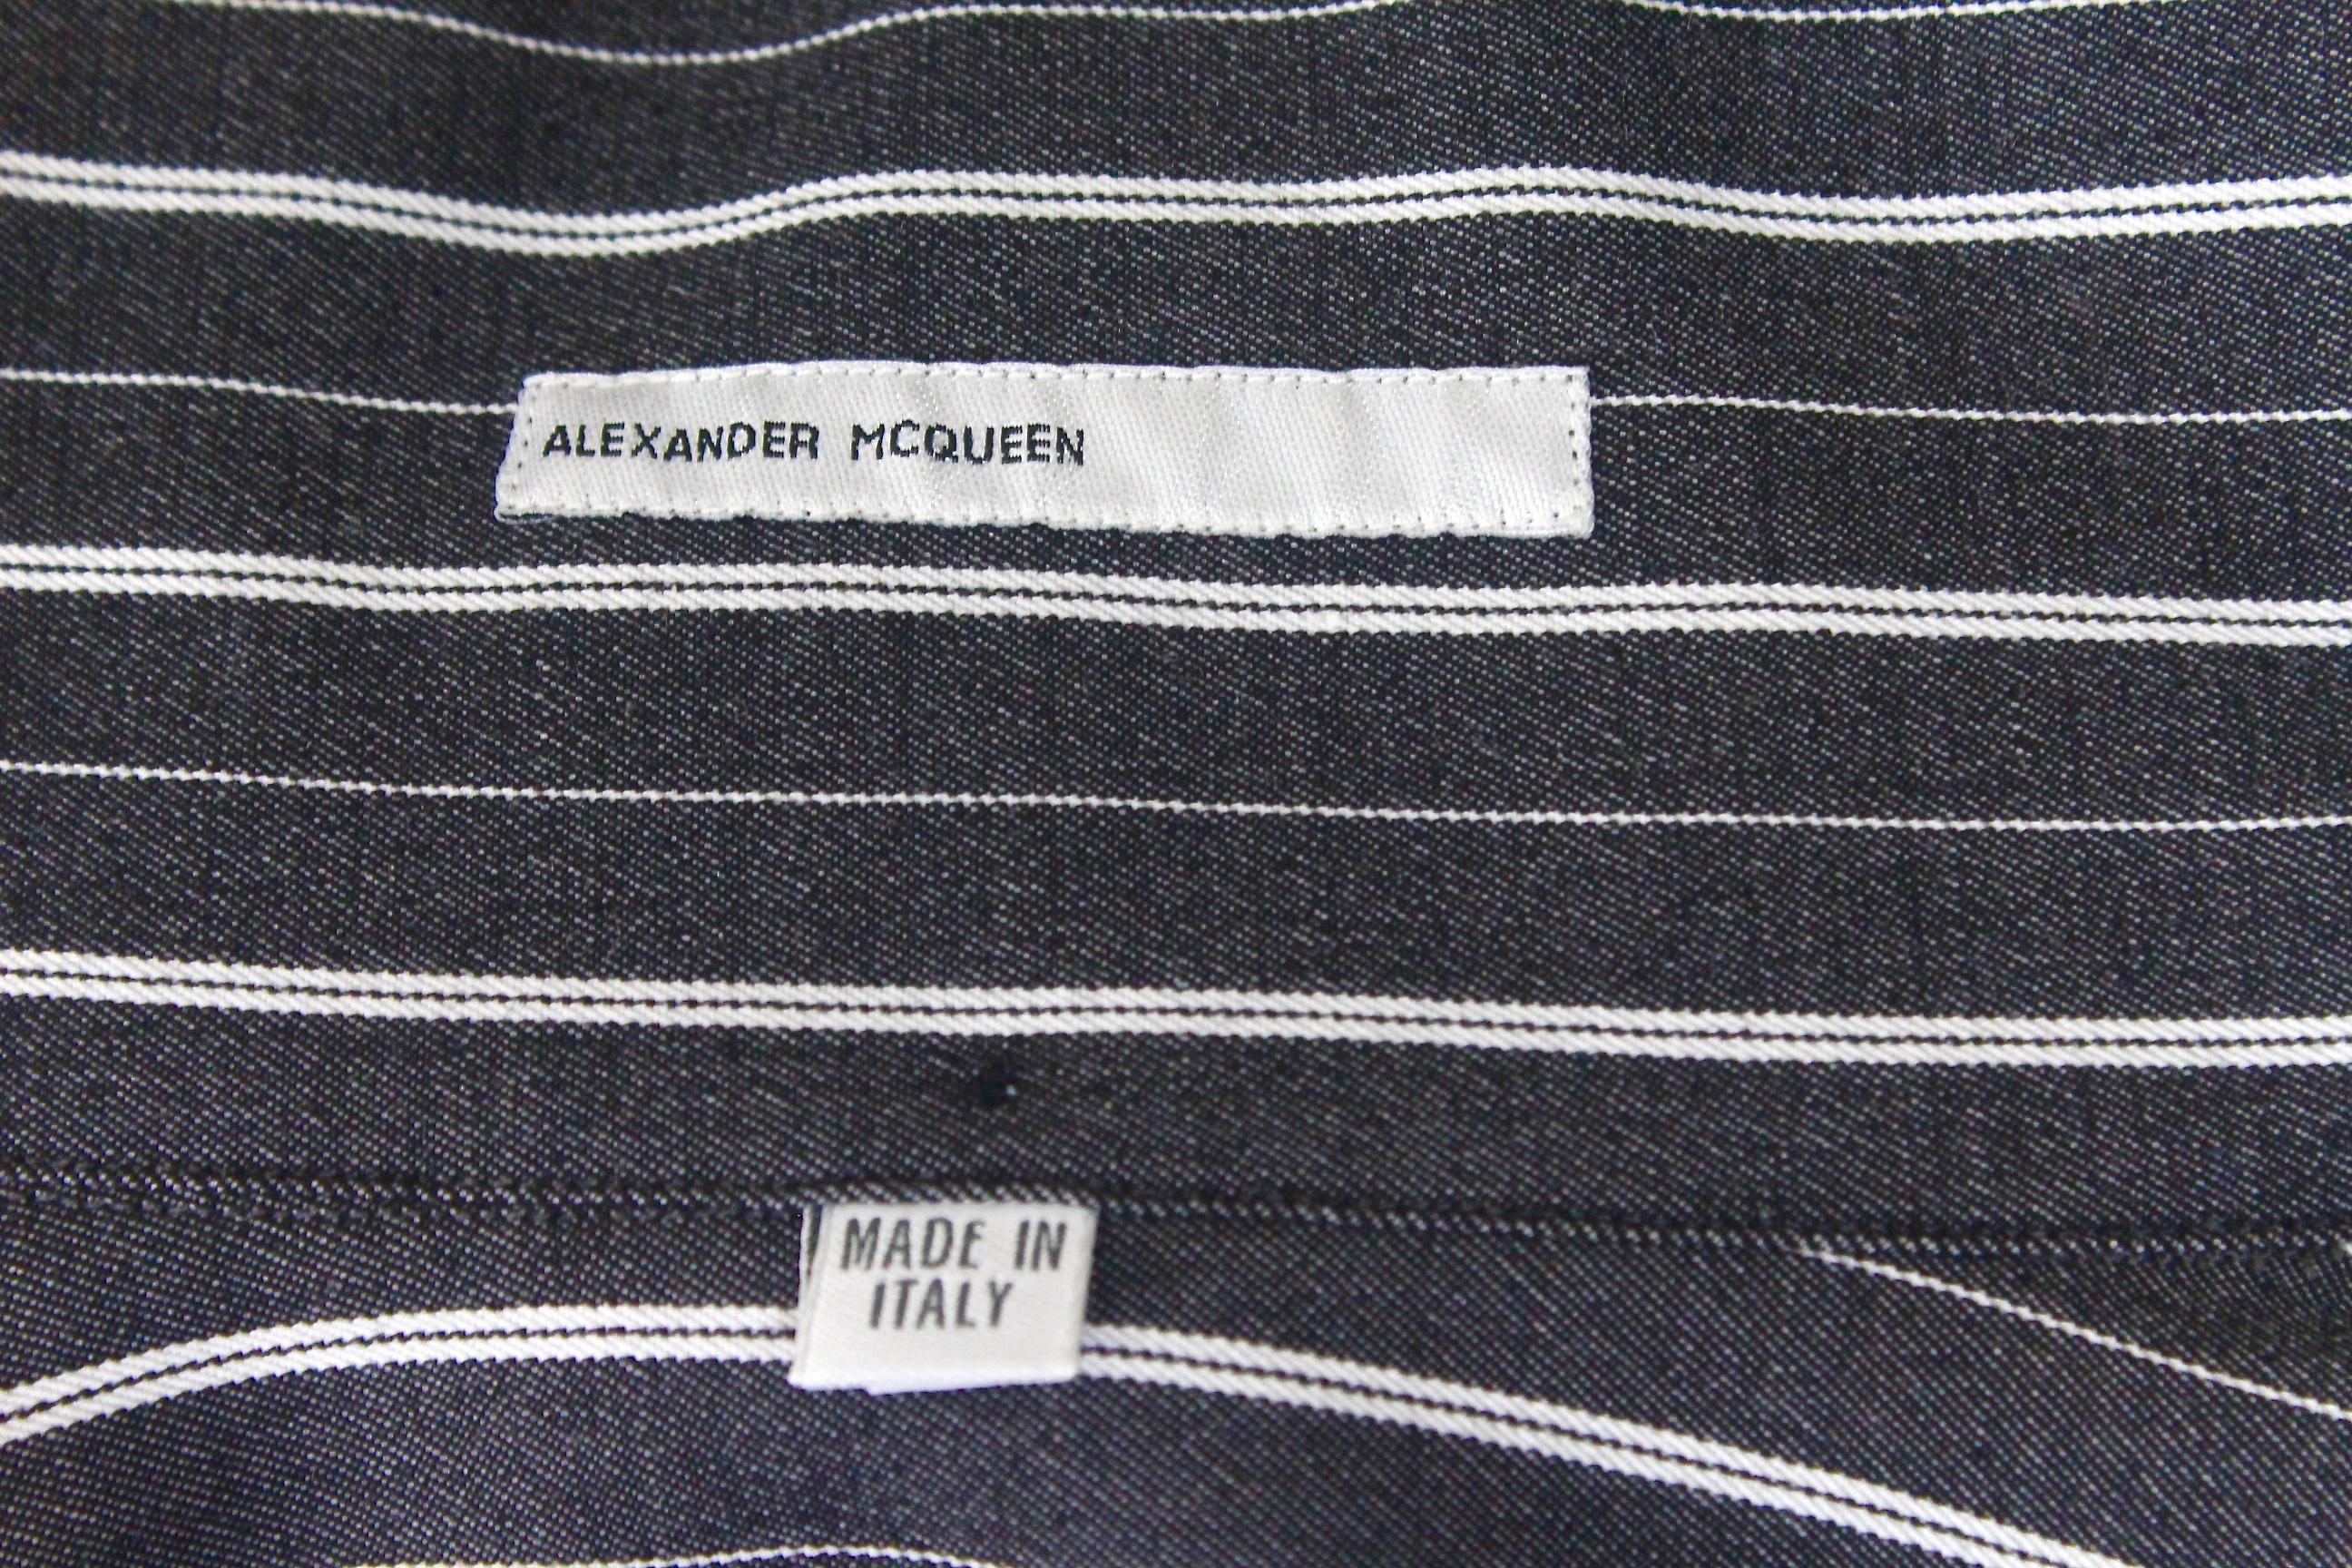 Alexander McQueen Dante Fall/Winter 1996 High Collar Suiting Shirt 14